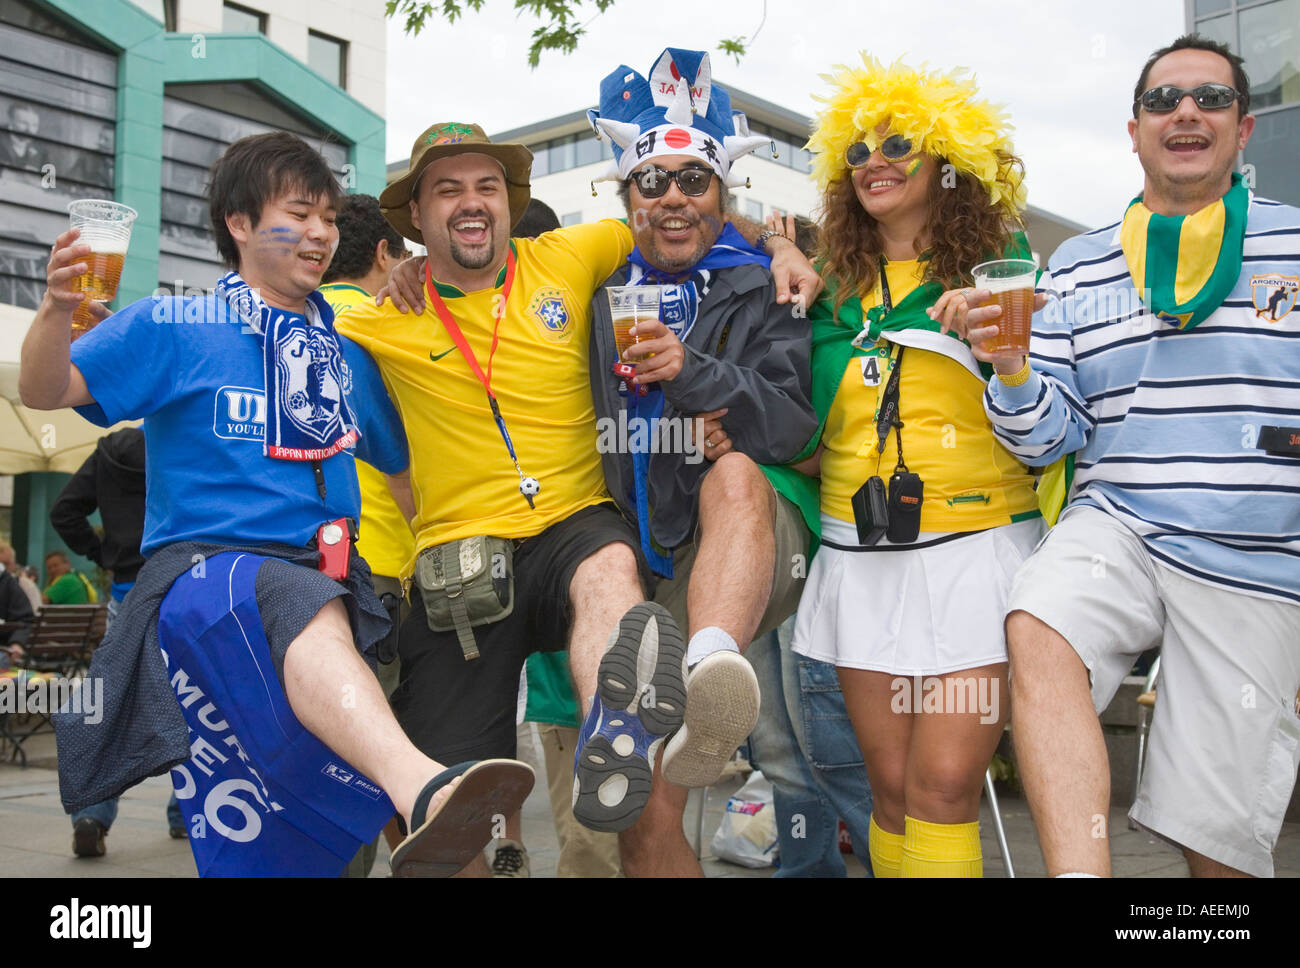 Fußball-Fans aus Japan, Brasilien und Argentinien Bier trinken und tanzen gemeinsam in gute Stimmung Stockfoto